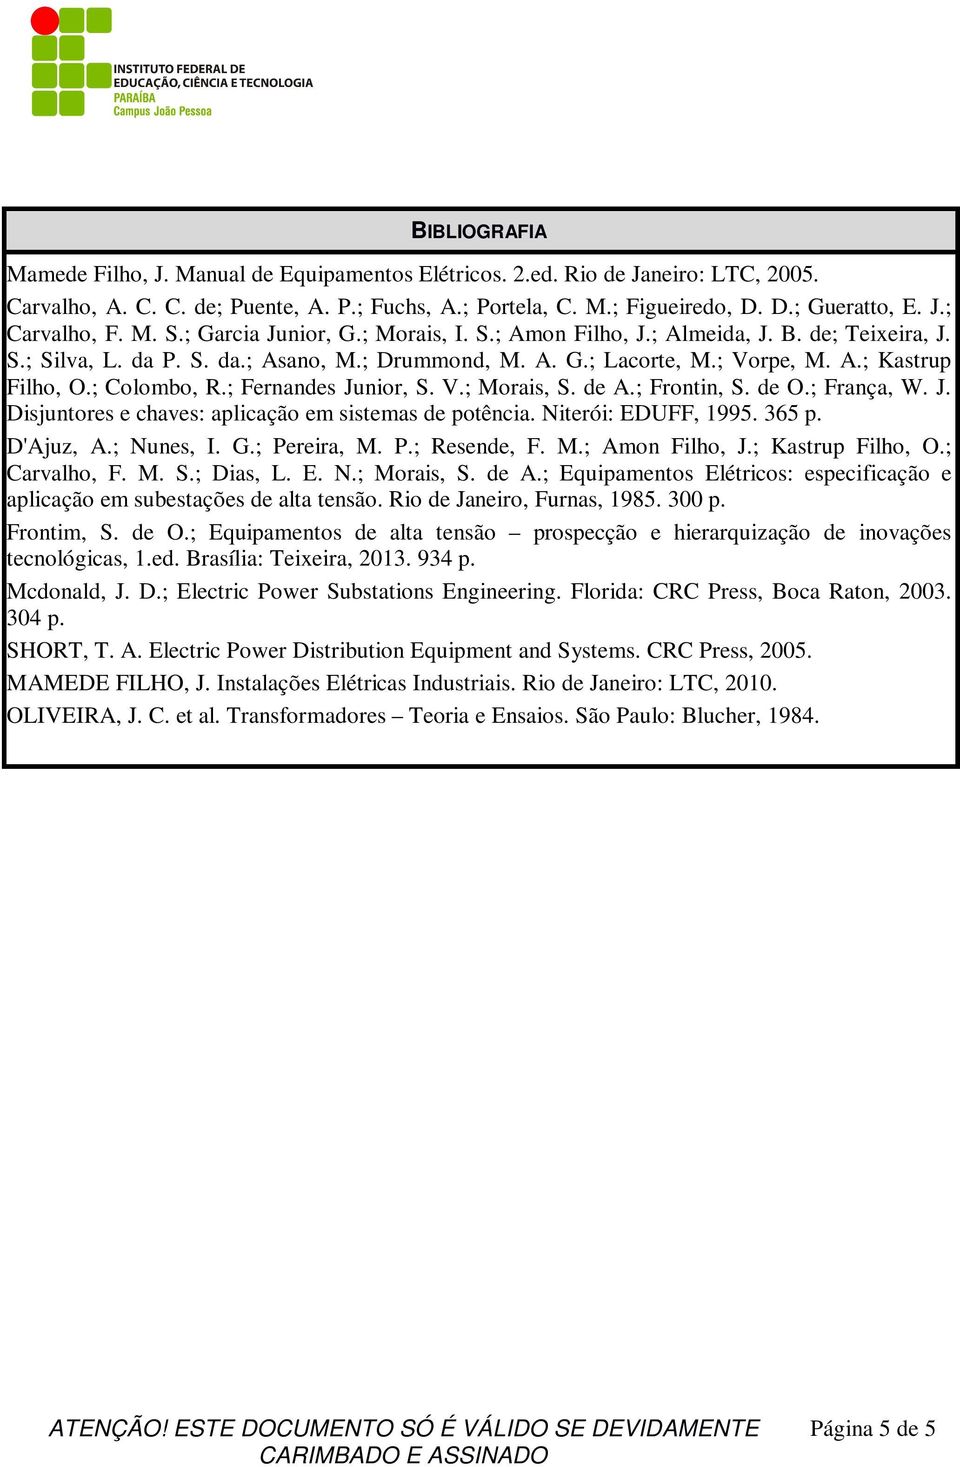 ; Colombo, R.; Fernandes Junior, S. V.; Morais, S. de A.; Frontin, S. de O.; França, W. J. Disjuntores e chaves: aplicação em sistemas de potência. Niterói: EDUFF, 1995. 365 p. D'Ajuz, A.; Nunes, I.